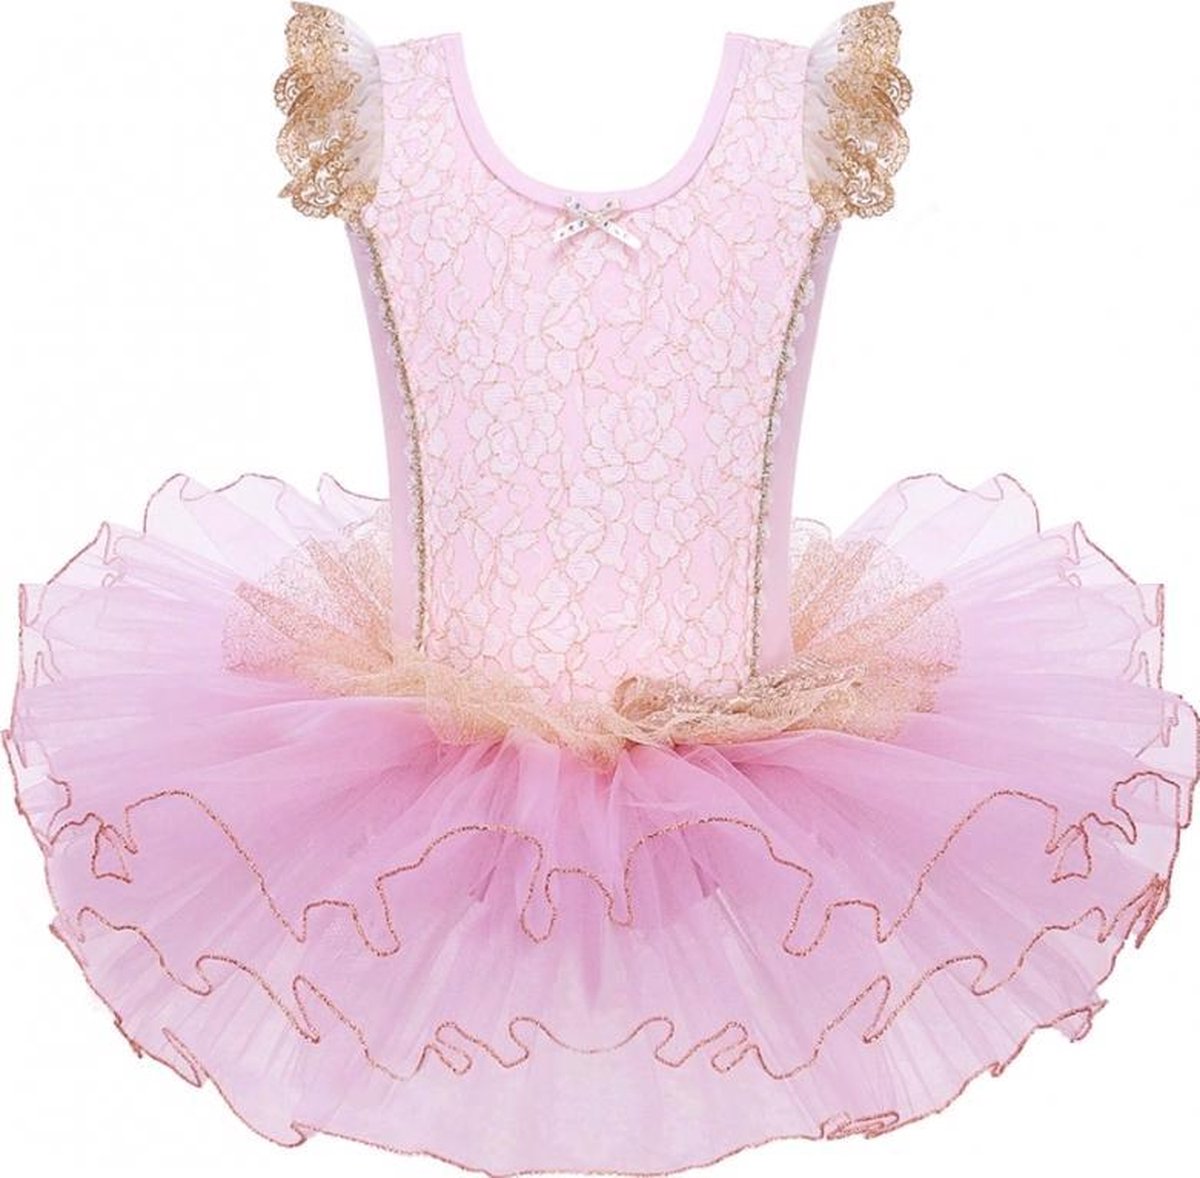 Goud Roze Balletpakje Ballerina Lovely134 + Tutu - Ballet - prinsessen tutu verkleed jurk meisje